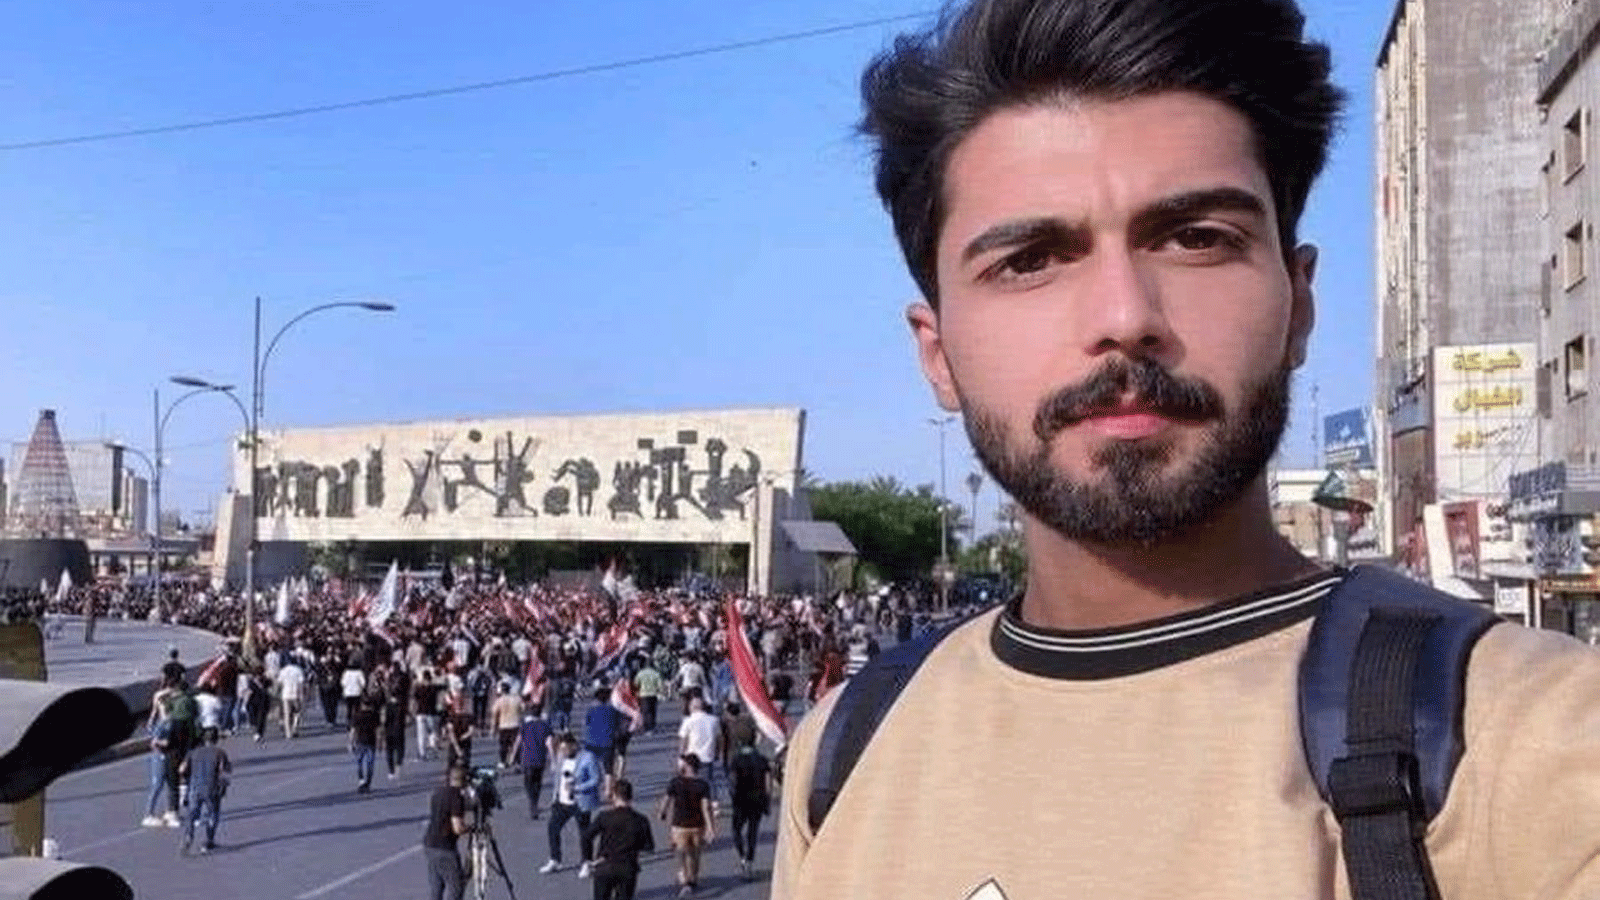 الناشط العراقي حيدر الزيدي حكم عليه الاثنين 5 كانون الأول\ ديسمبر 2022 بالسجن المشدد لثلاث سنوات لهجومه على ابو مهدي المهندس نائب رئيس هيئة الحشد سابقا وعلى مليشياتها (تويتر)